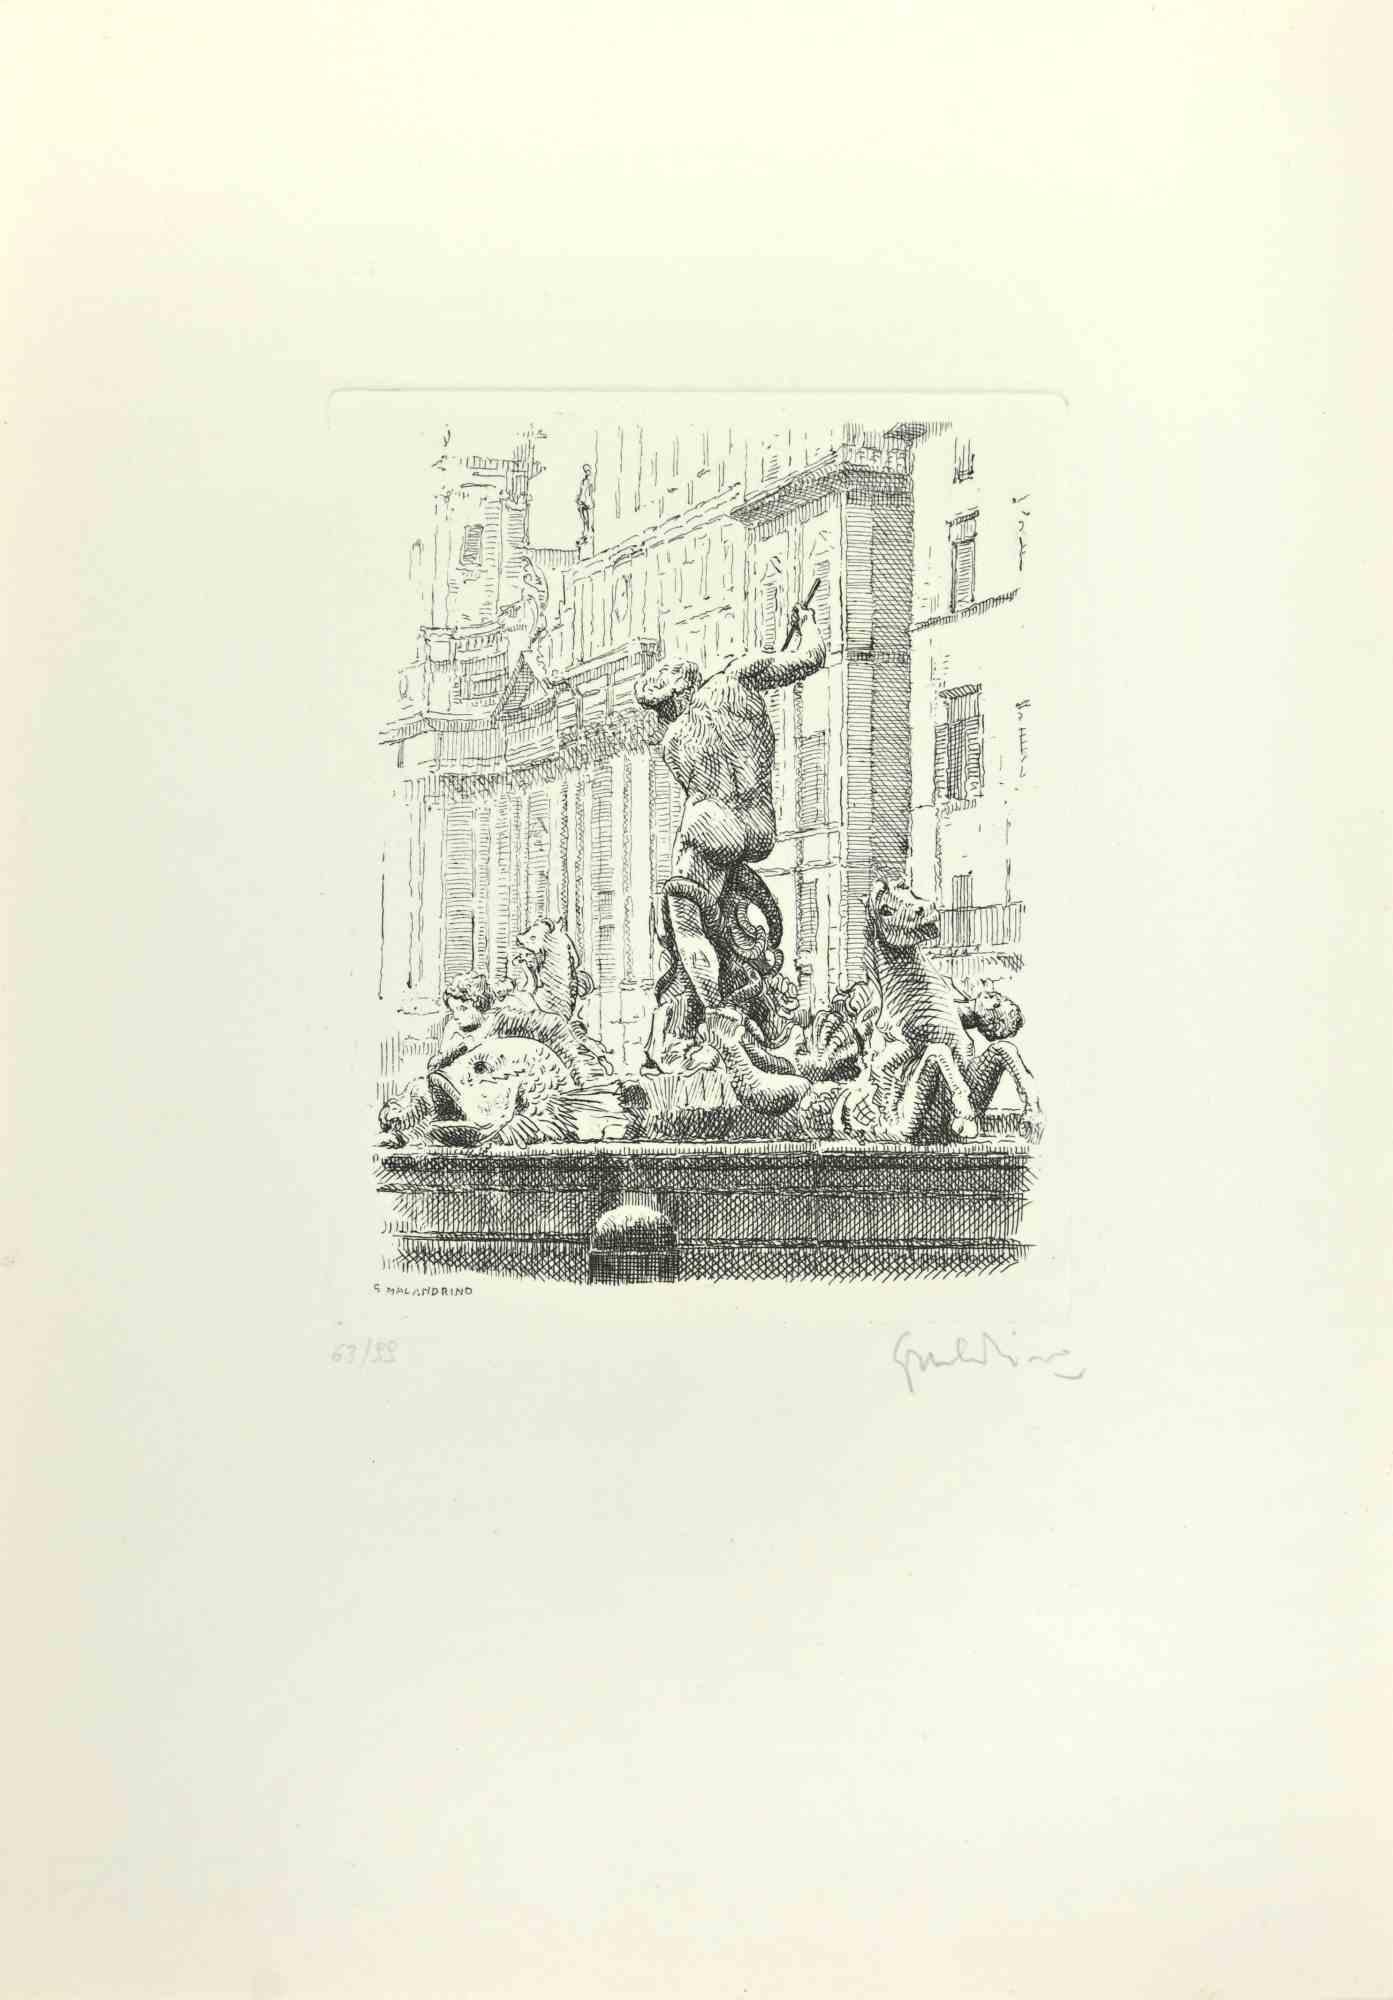 Navona Square ist ein Kunstwerk von Giuseppe Malandrino.

Druck in Ätztechnik.

Vom Künstler in der rechten unteren Ecke mit Bleistift handsigniert.

Nummerierte Auflage von 99 Exemplaren.

Guter Zustand. 

Dieses Kunstwerk stellt die schöne